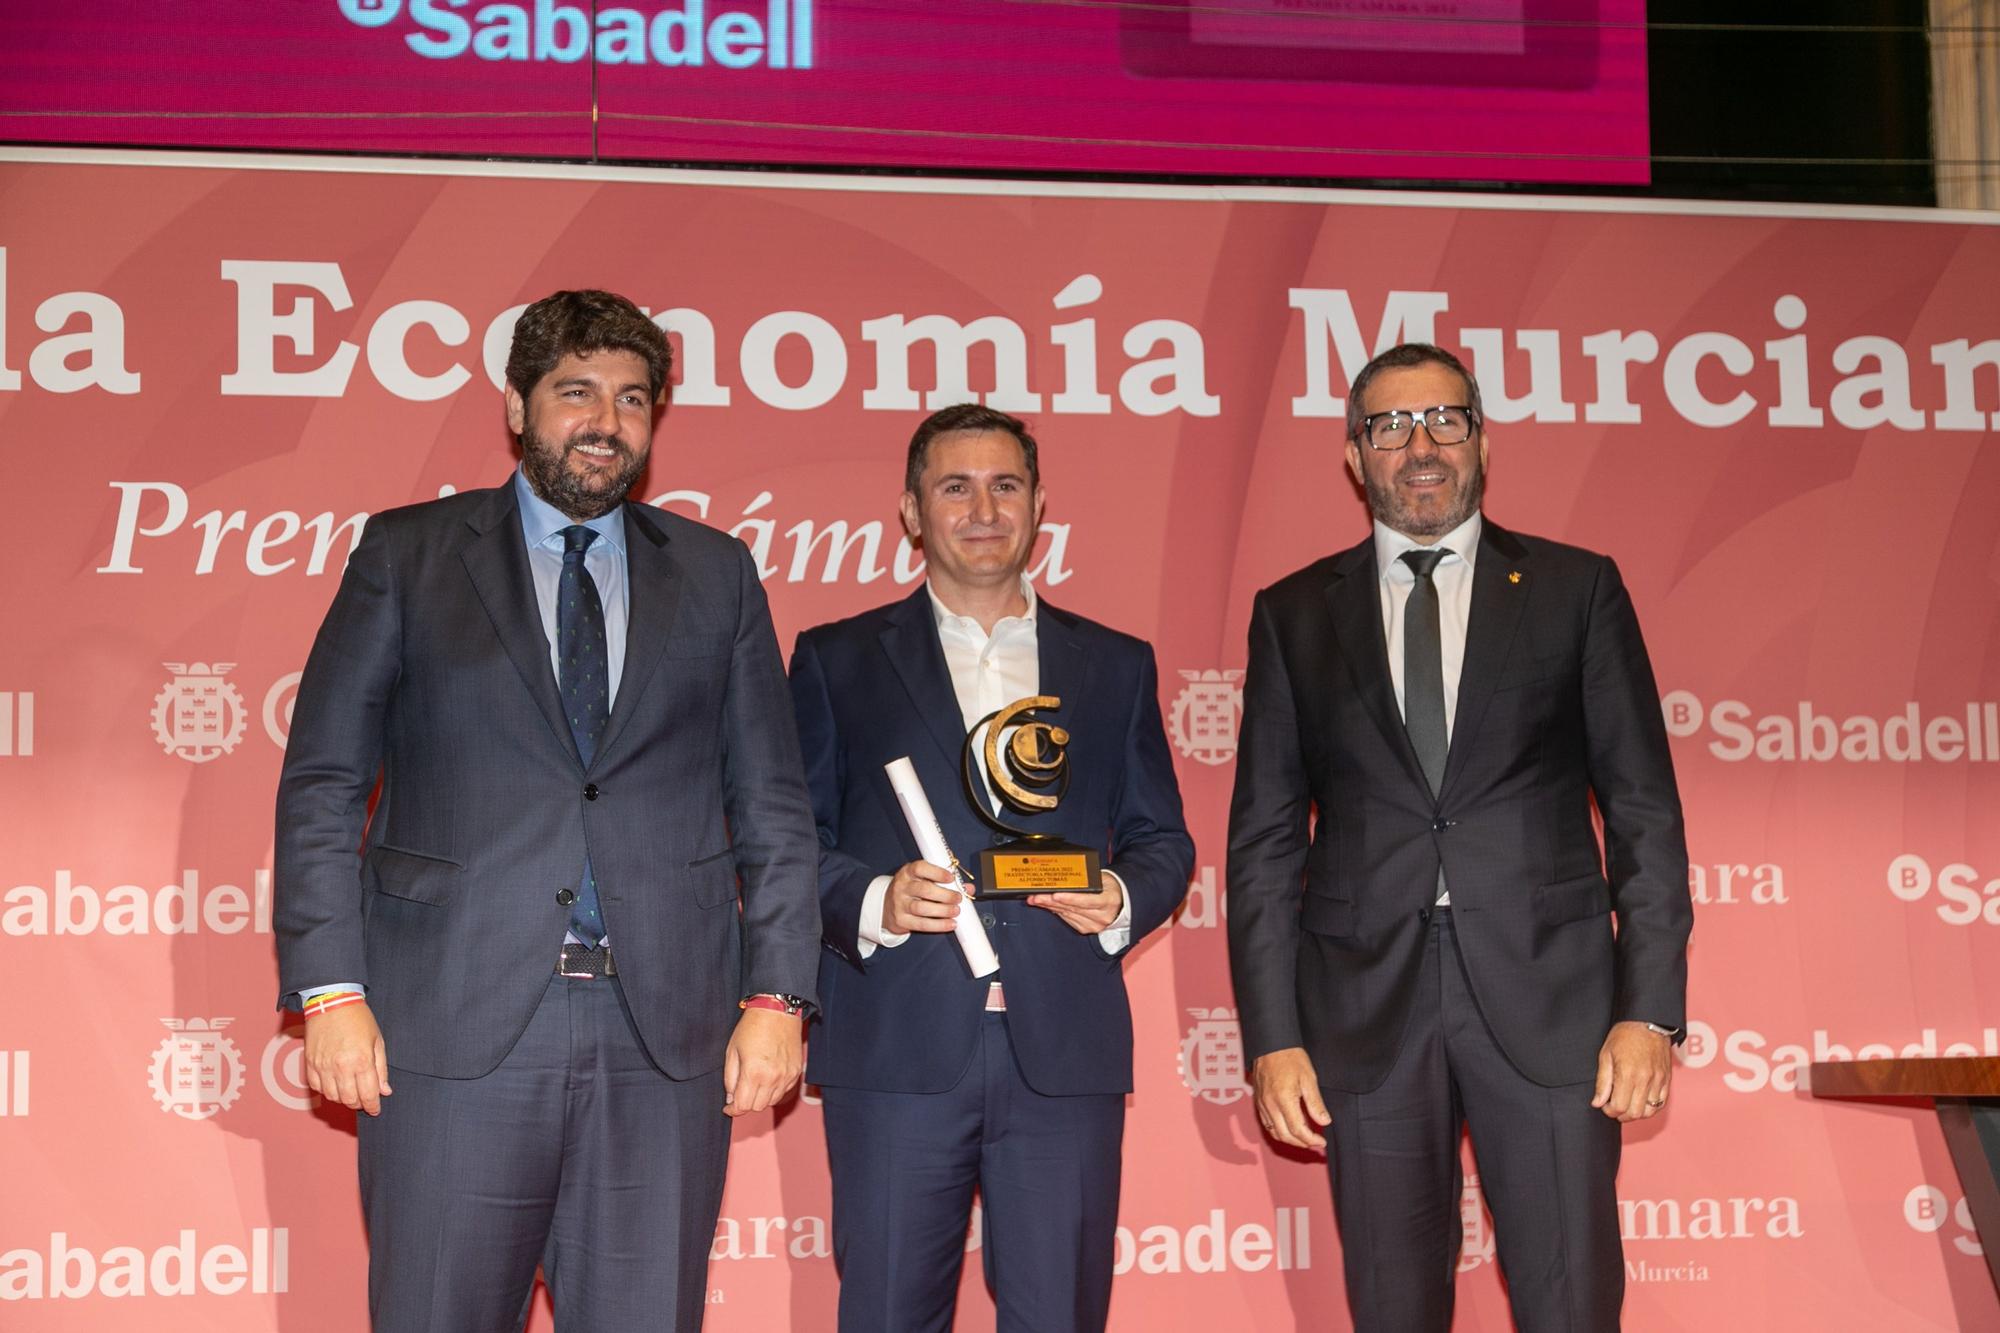 Las imágenes de 'La Noche de la Economía Murciana'